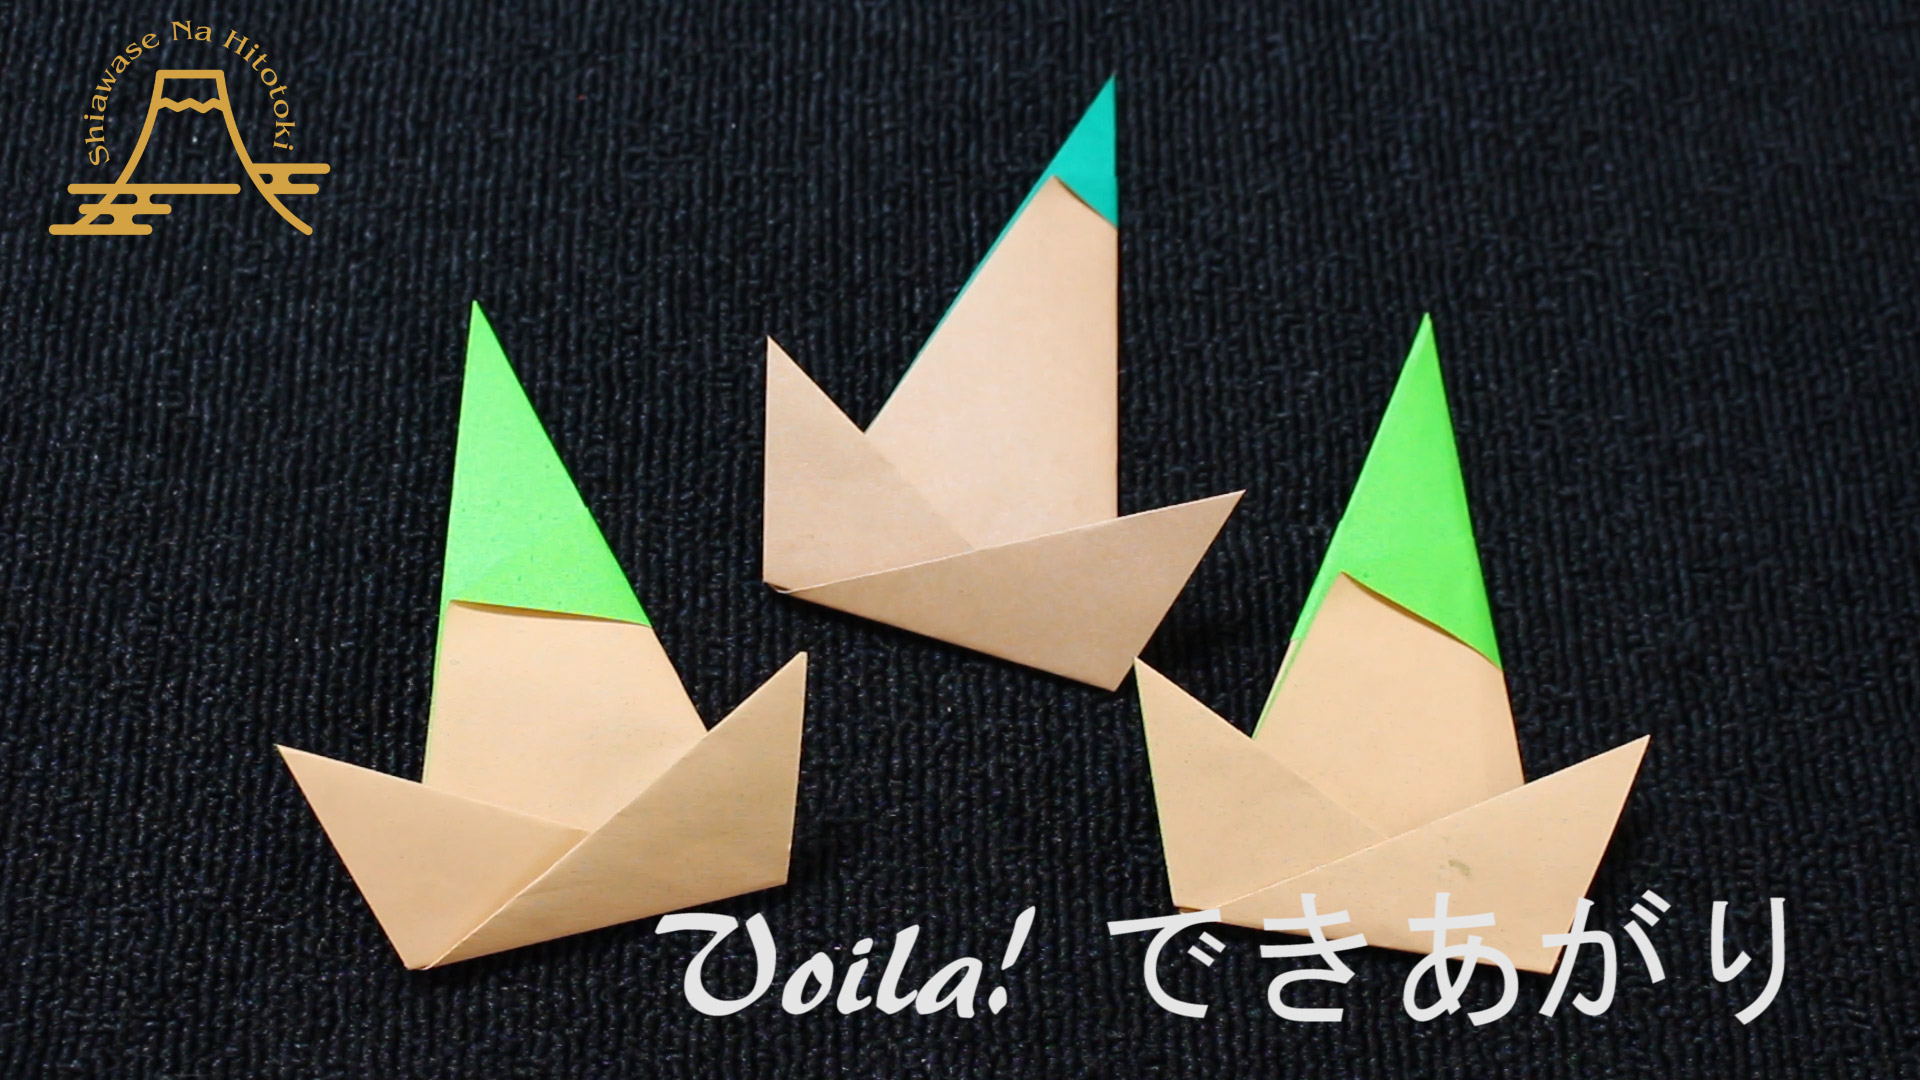 簡単 折り紙 竹の子 筍 の折り方 春の味覚 たけのこ 折り紙の折り方 幸せなひと時